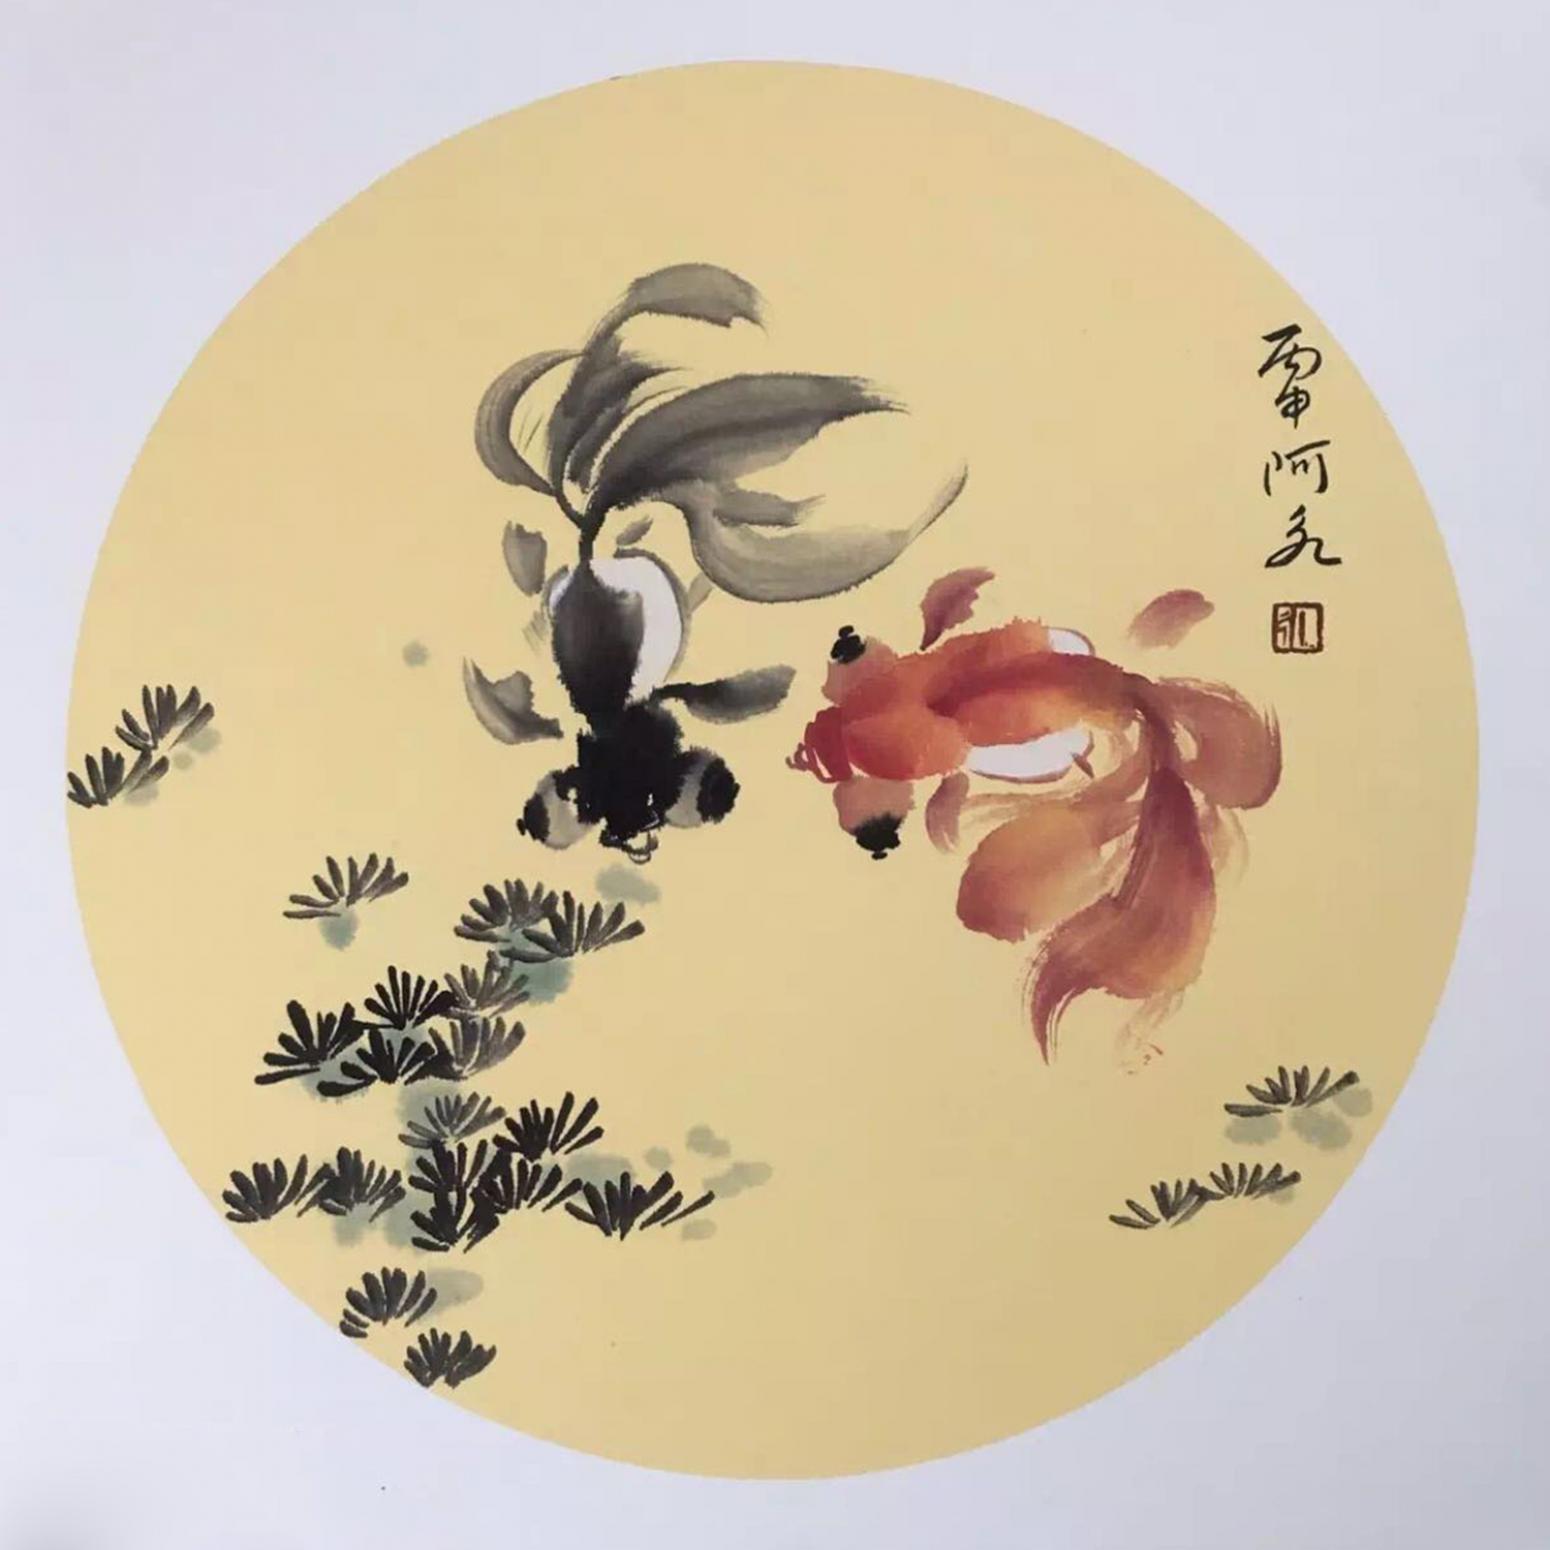 新中式国潮风金鱼设计元素风格插画设计作品-设计人才灵活用工-设计DNA